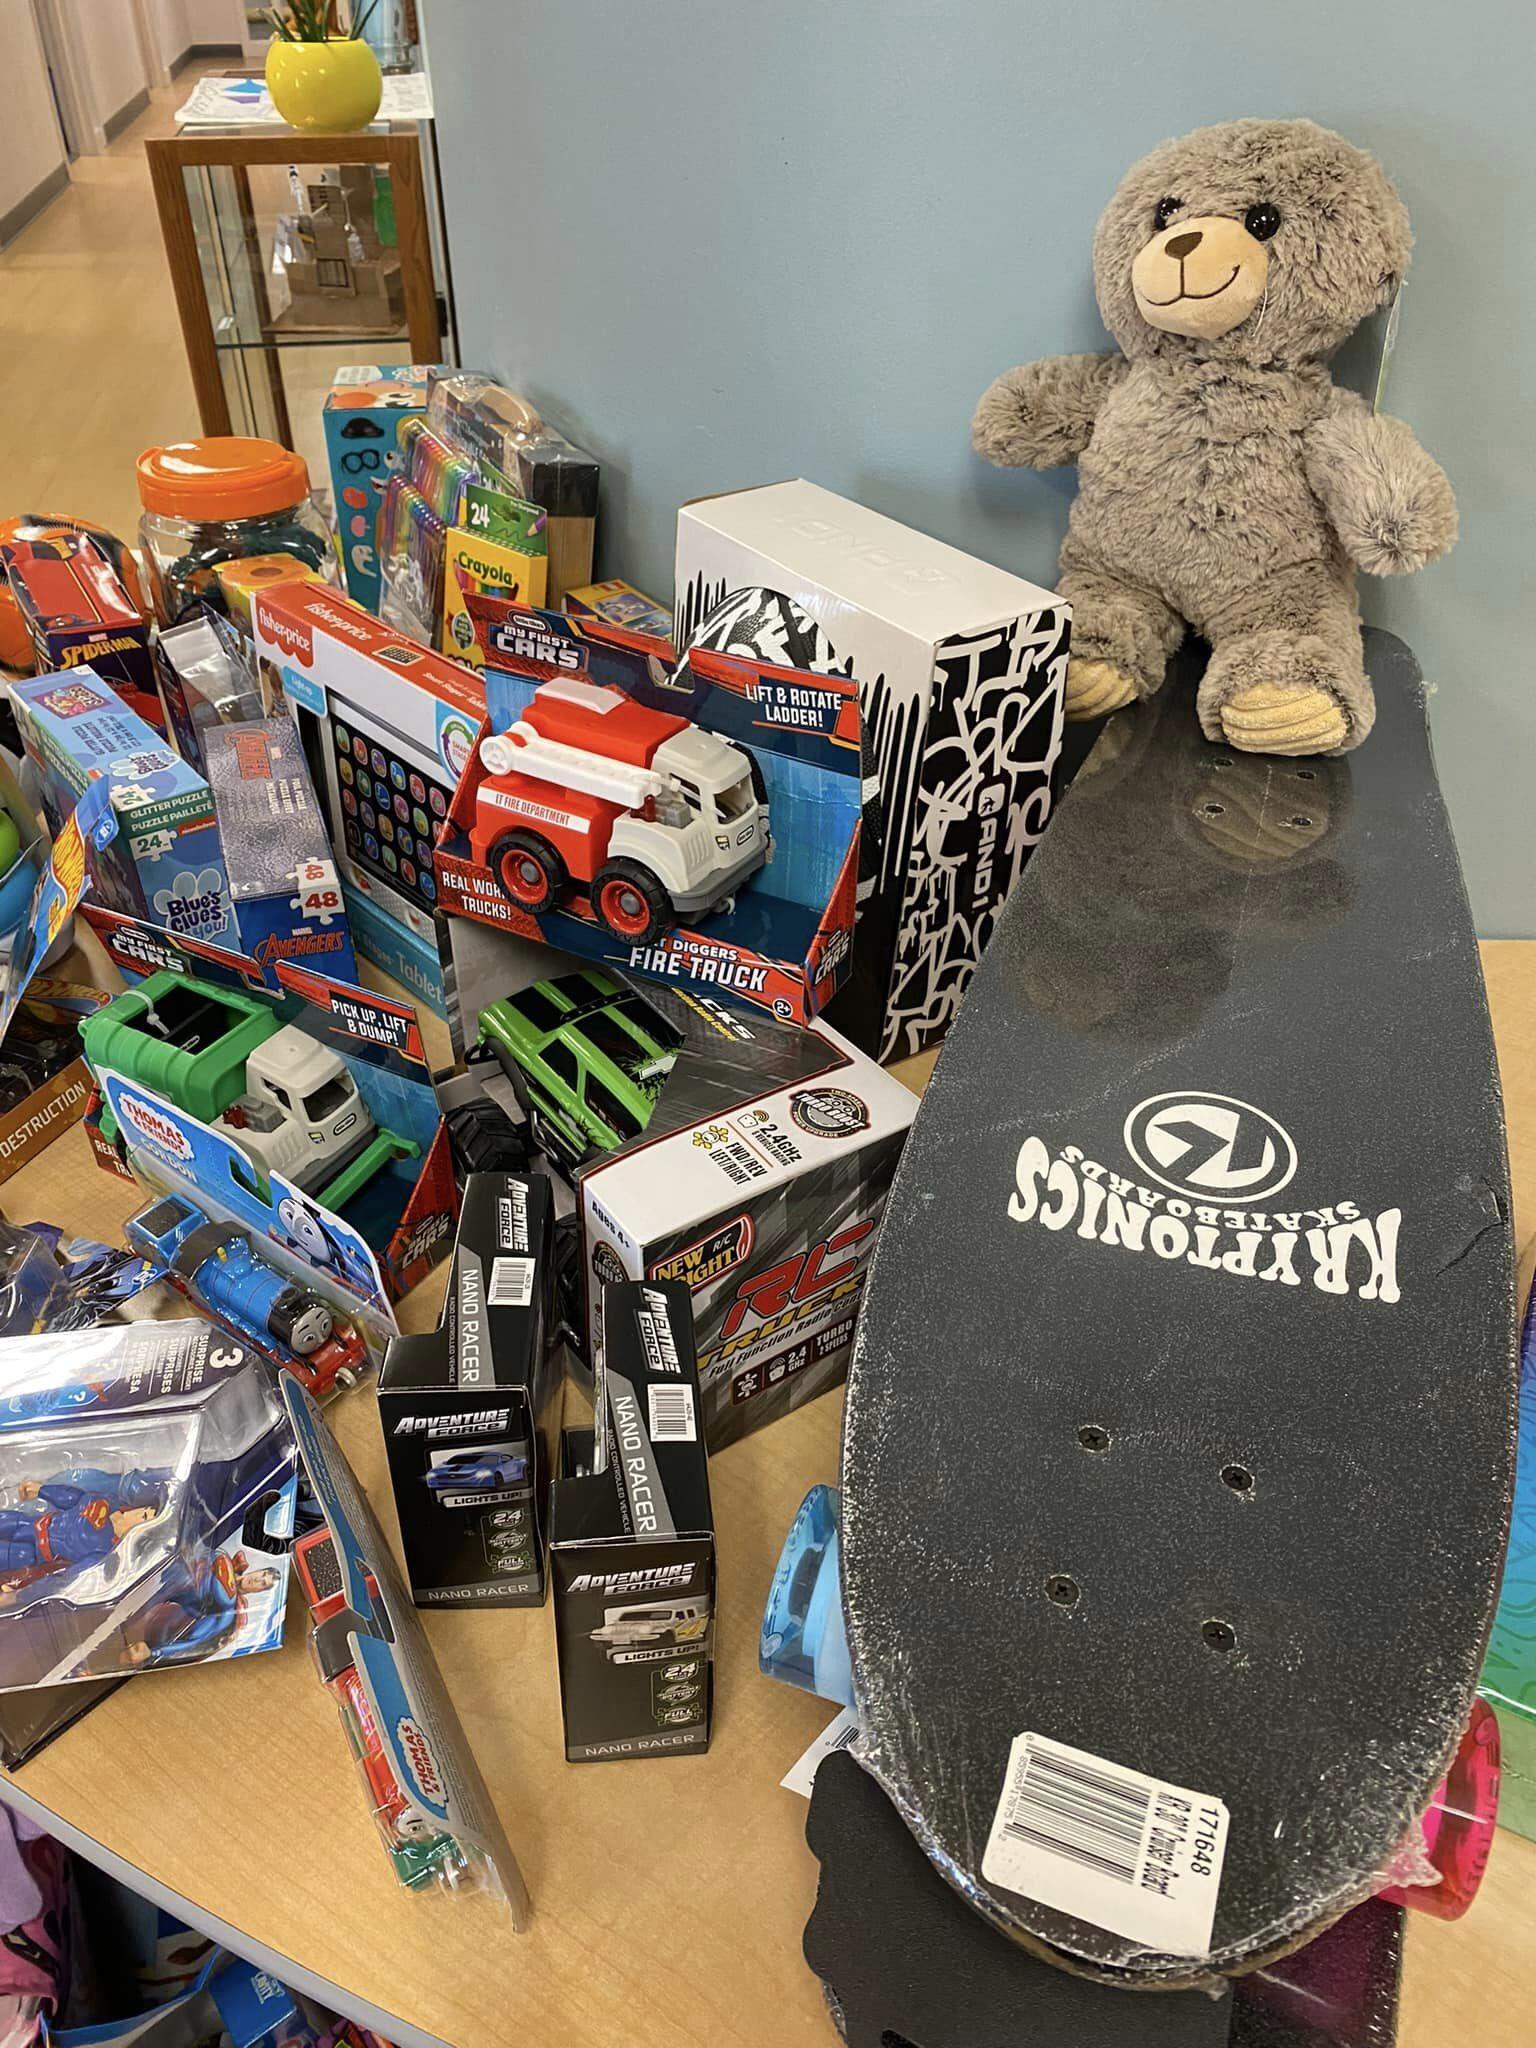 skateboards and a teddy bear on a table